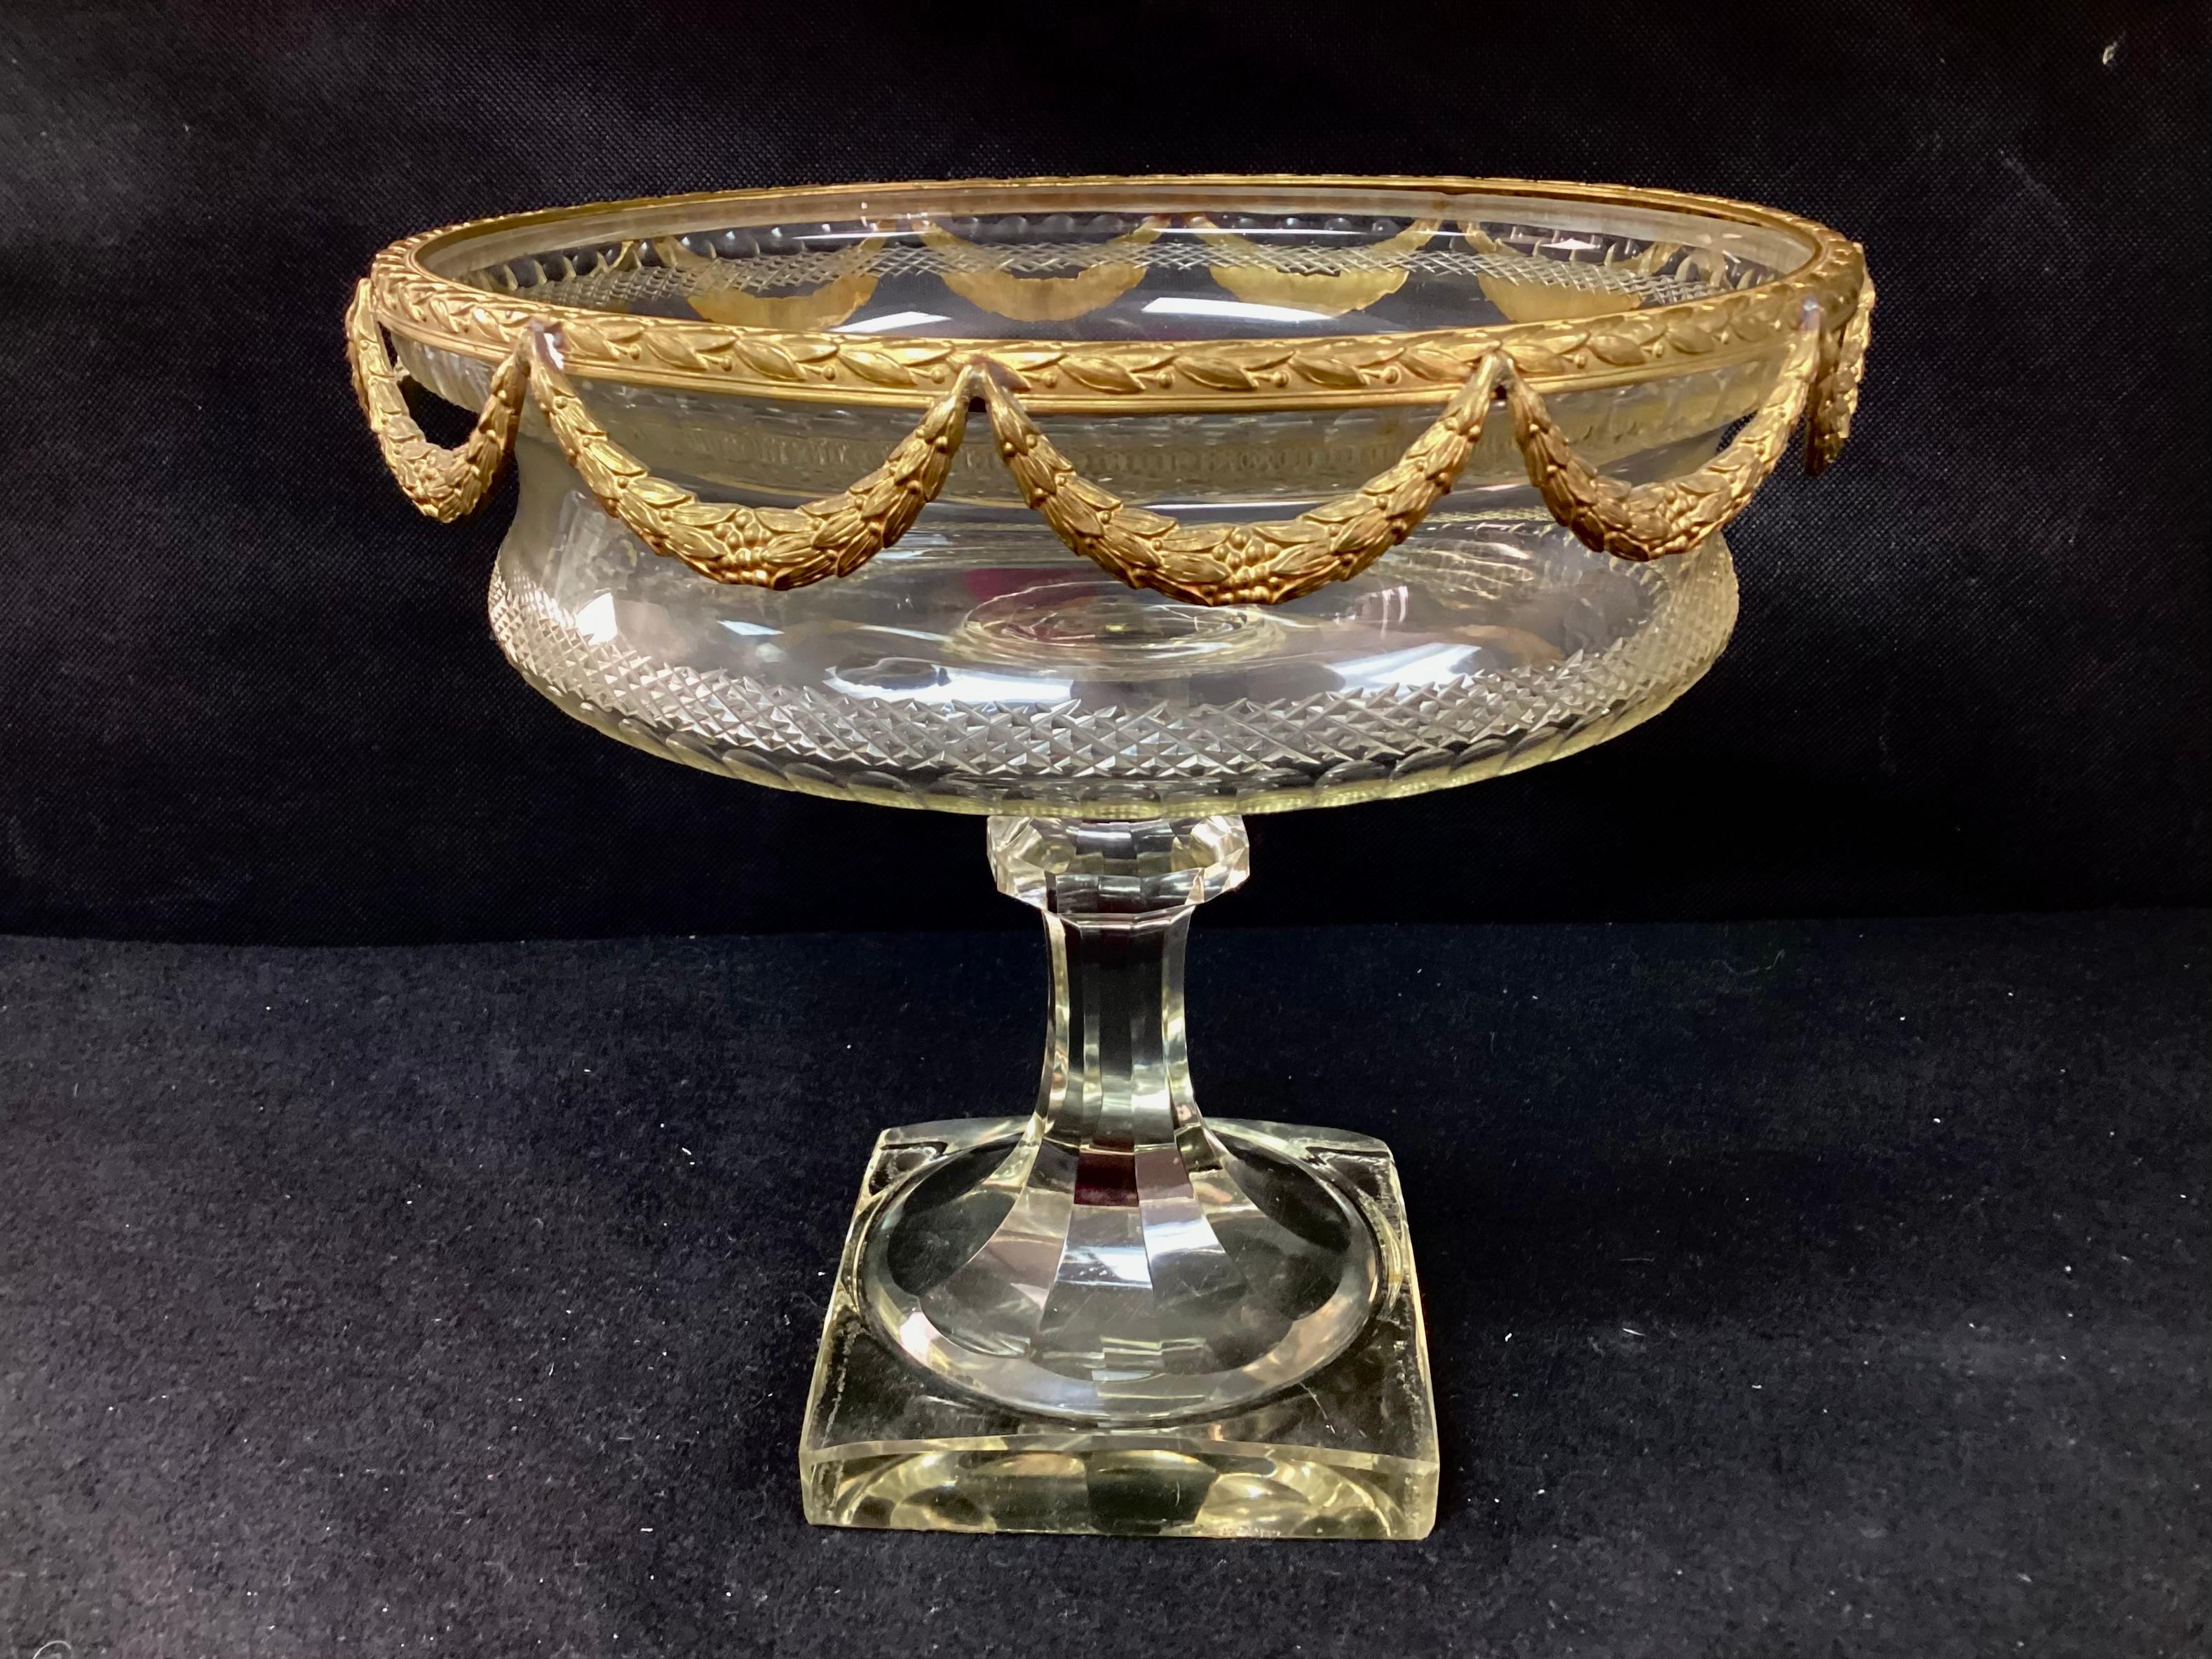 Centre de table/bol de style Louis XVI en cristal de plomb taillé et bronze doré. Cristal taillé à la main et garniture supérieure en bronze doré. Attribué à Baccarat. Peut être utilisé pour contenir des fruits, comme présentoir décoratif ou comme